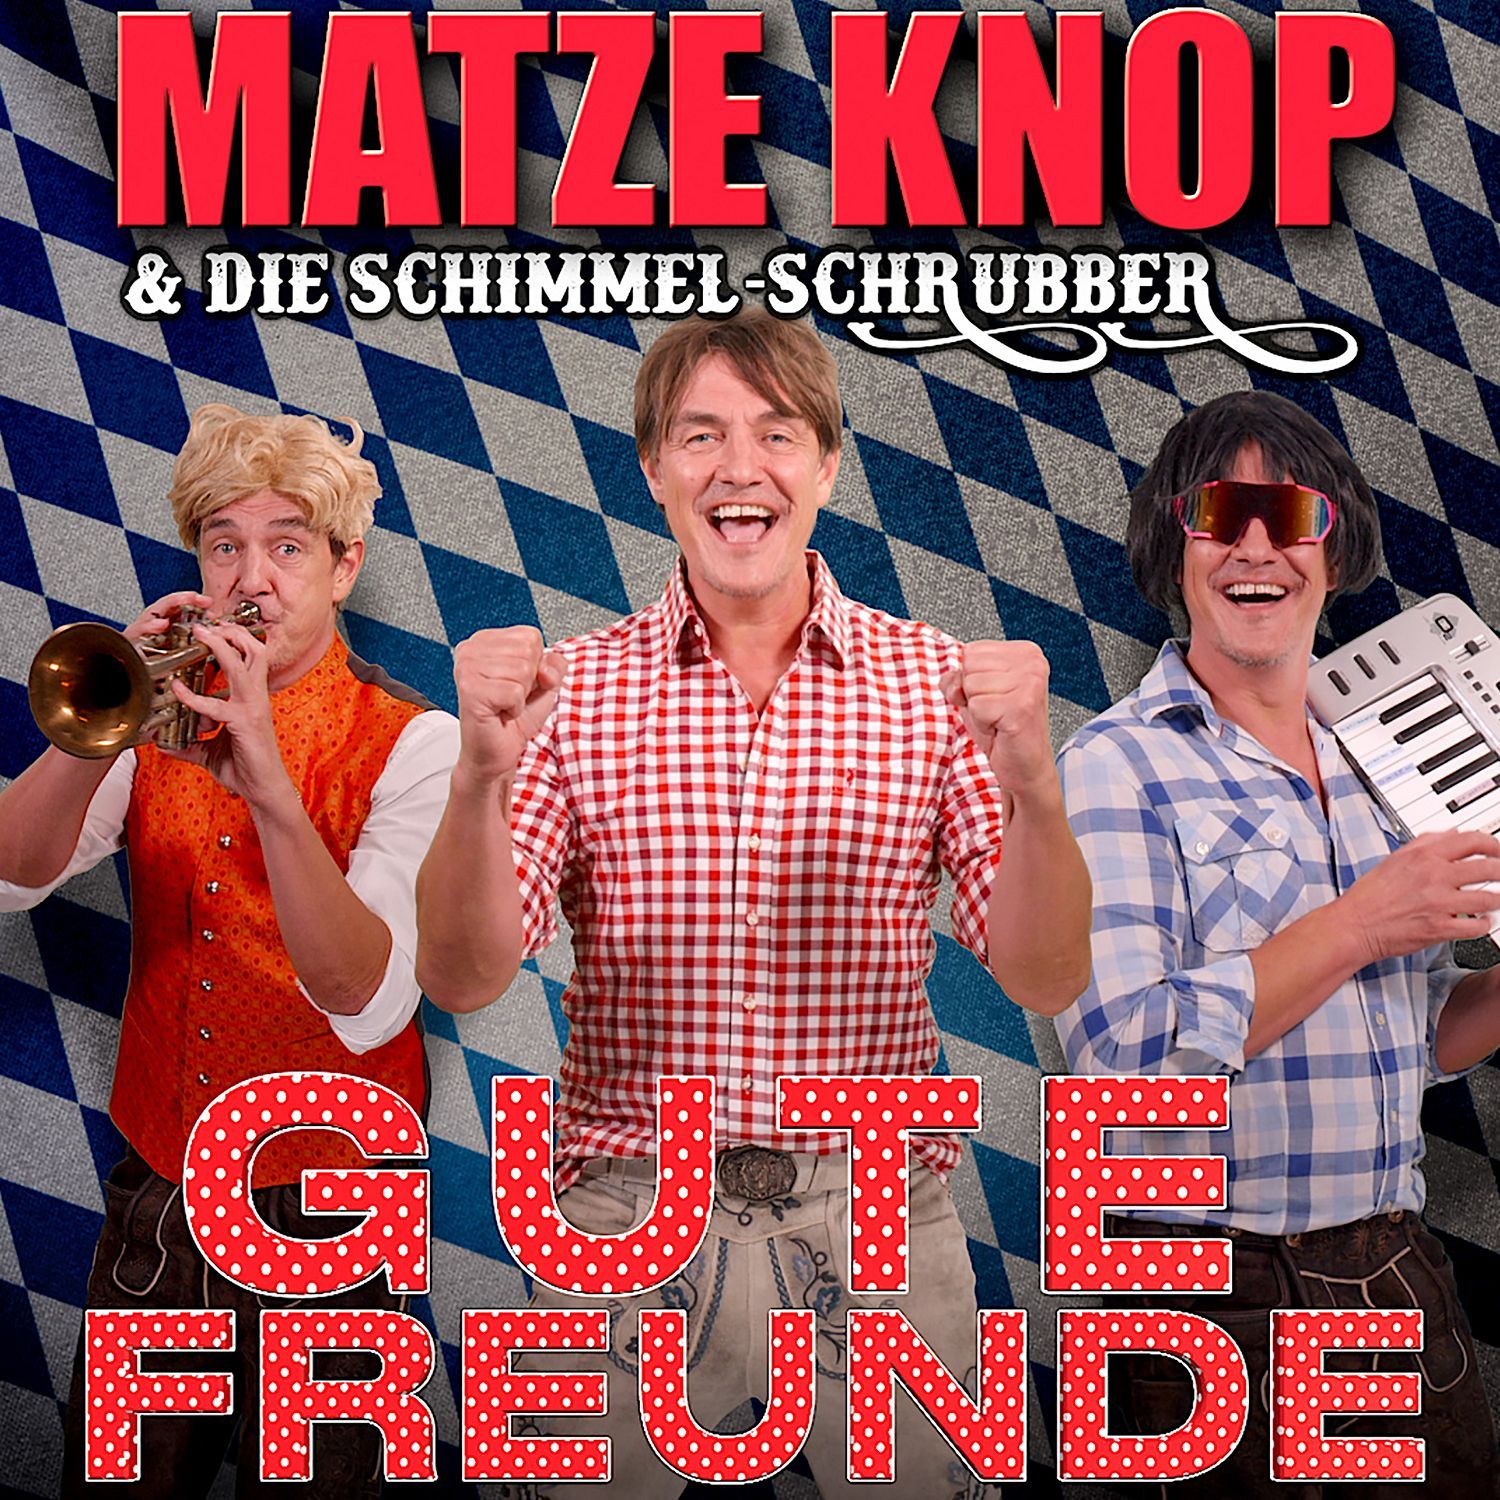 Matze Knop & Die Schimmel-Schrubber – Gute Freunde